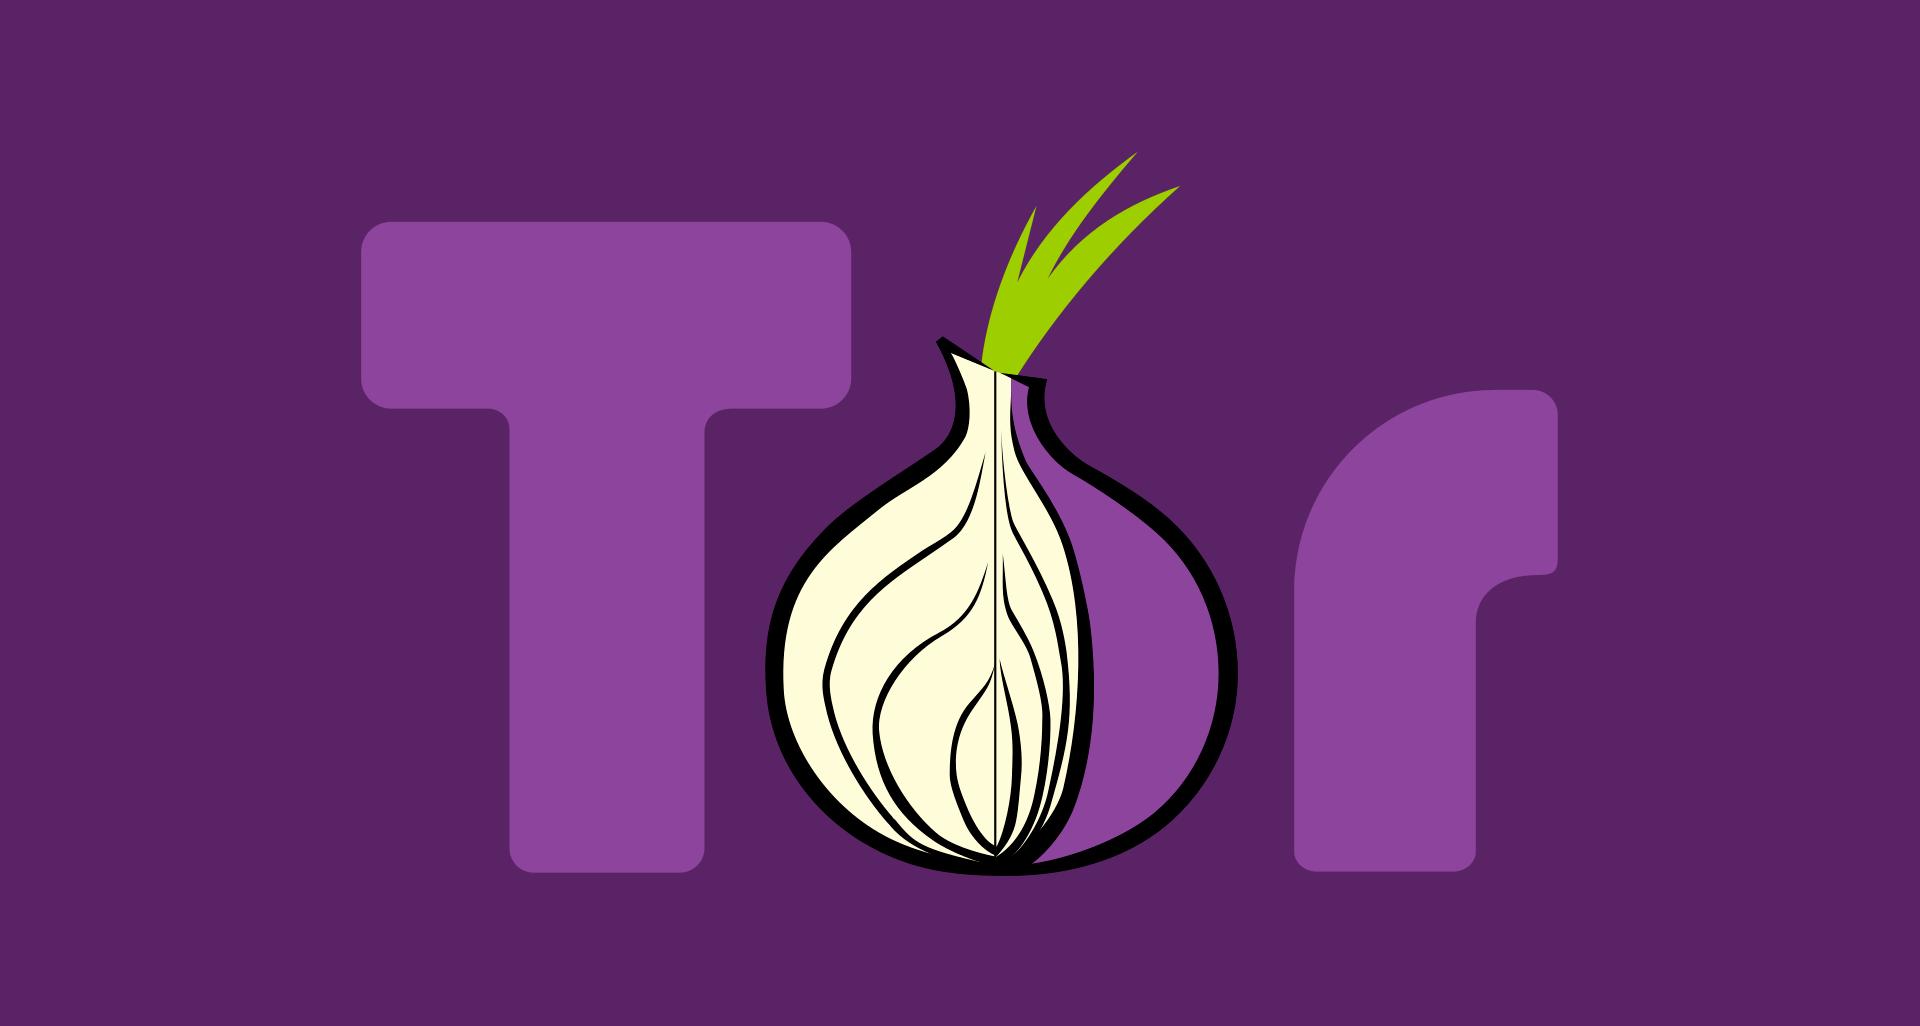 Tor browser firefox 6 mega тор браузер скачать бесплатно на русском последняя для айфон mega